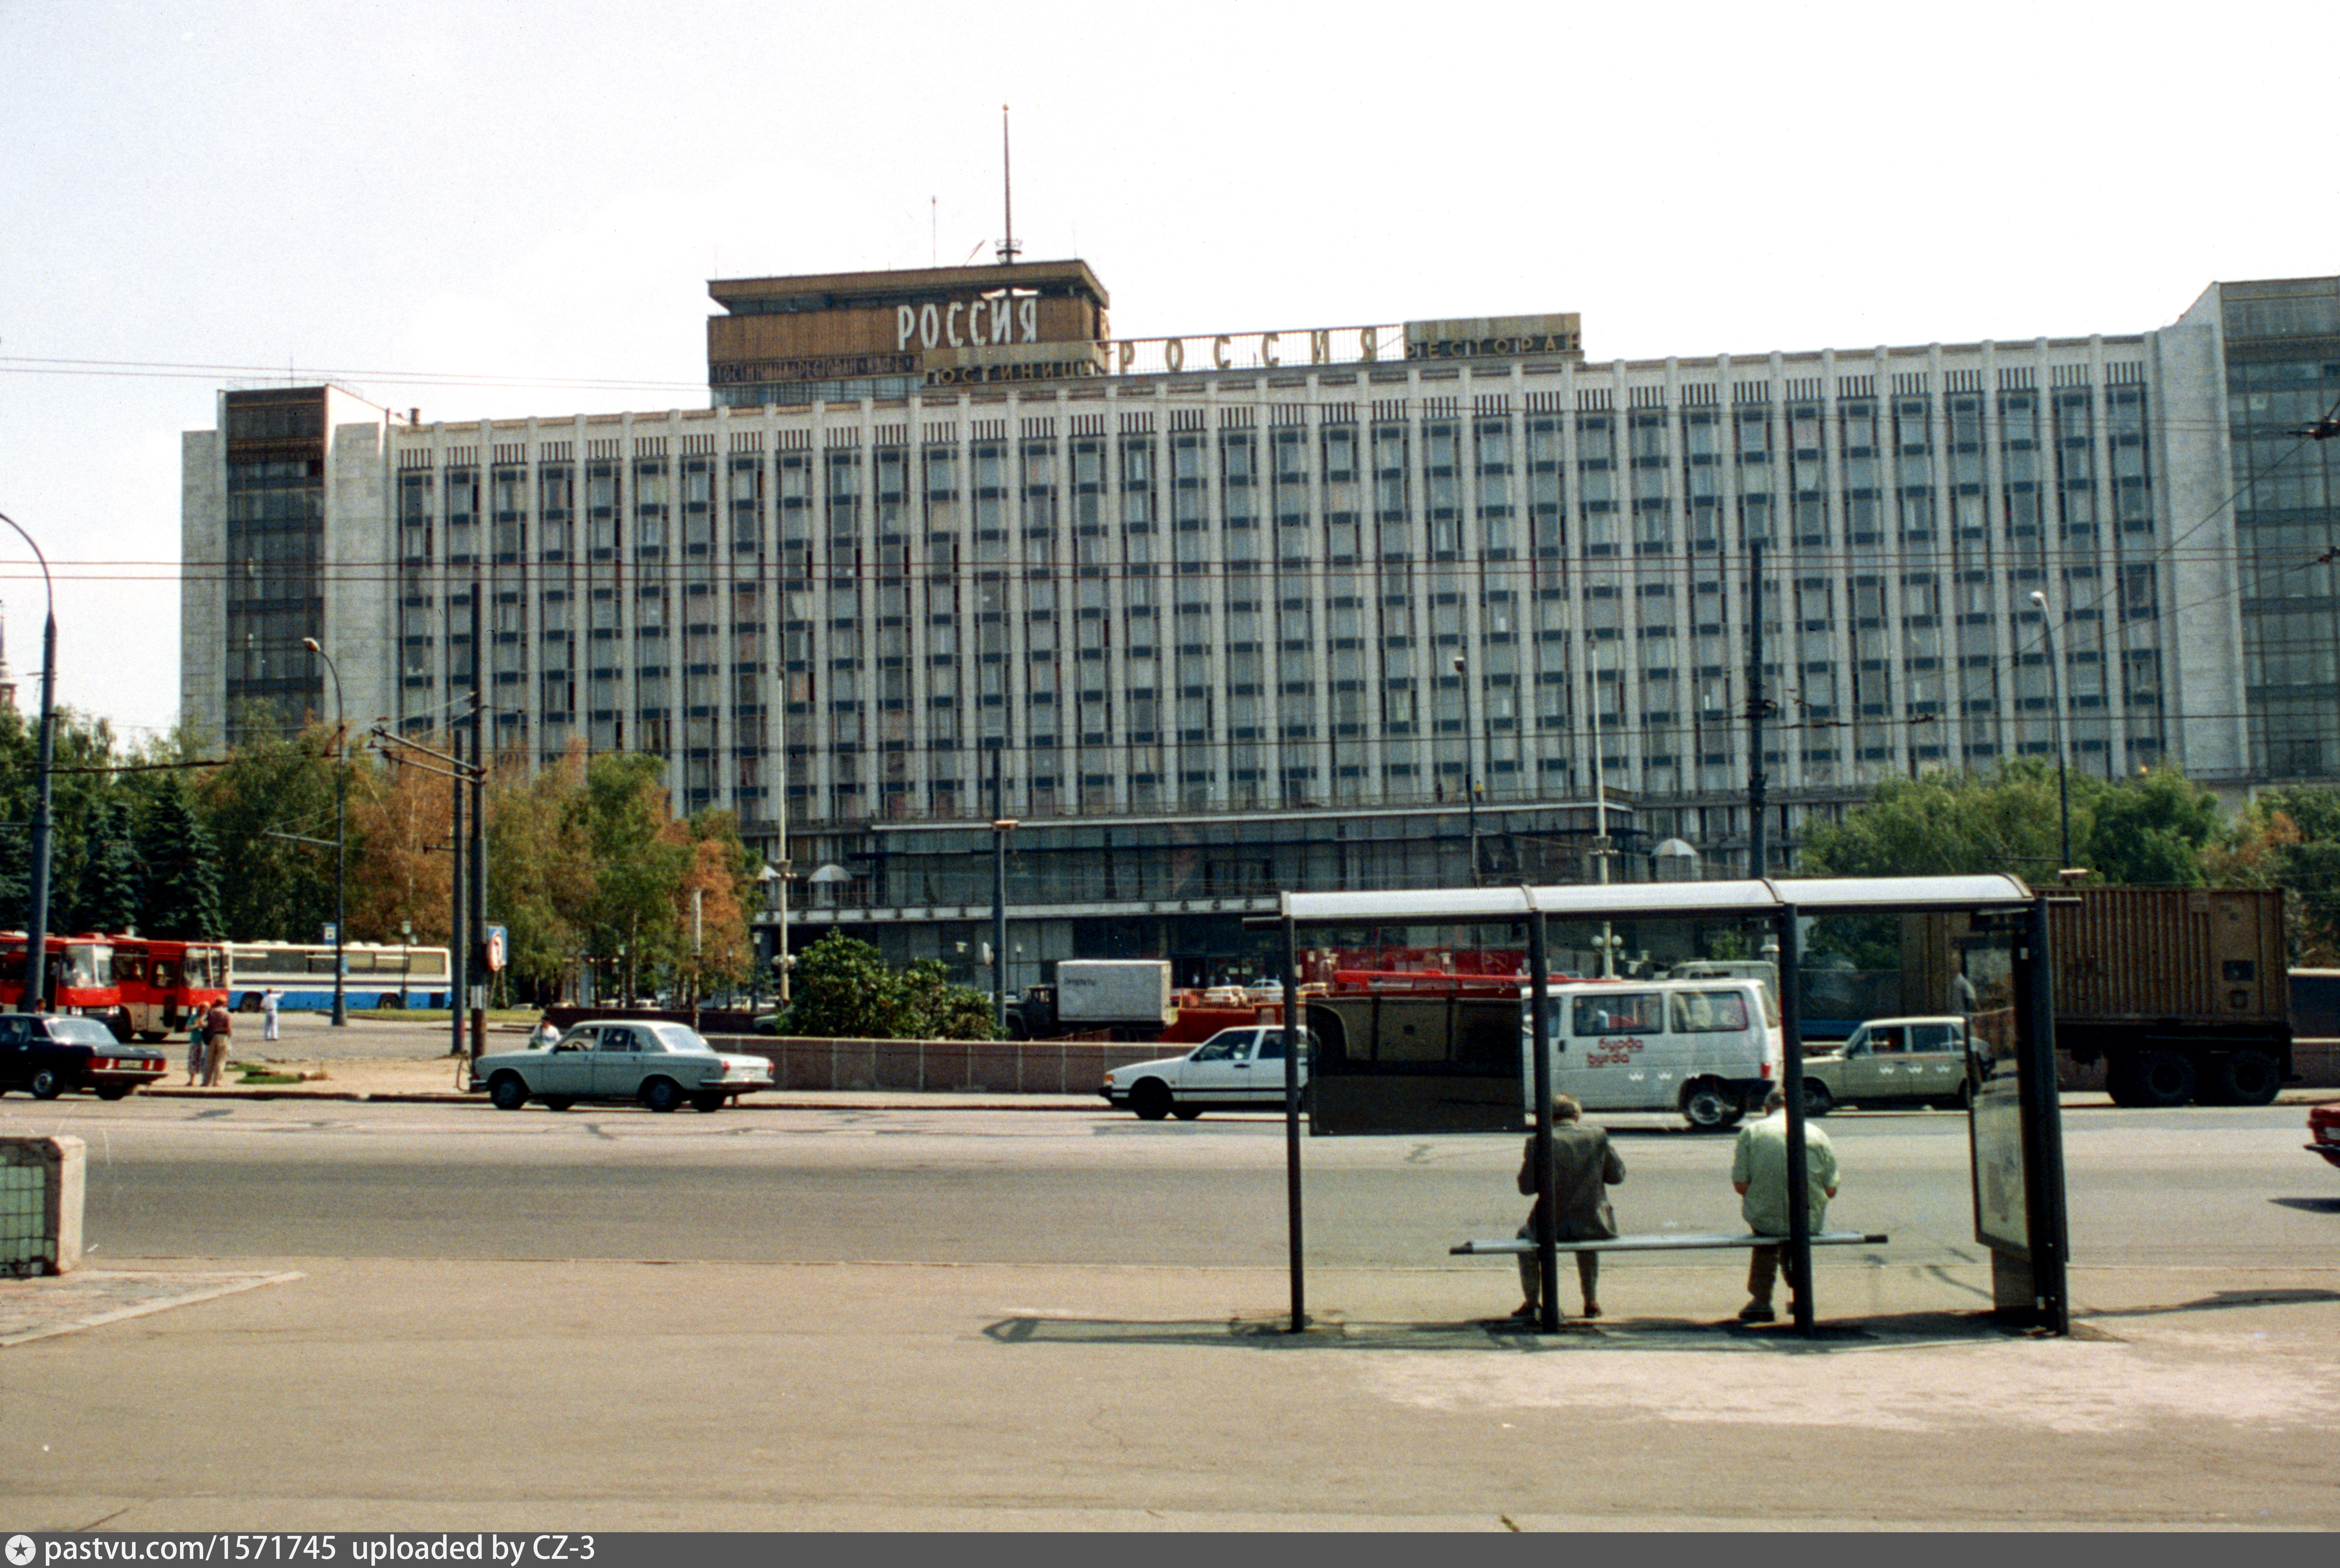 номера гостиницы россия в москве